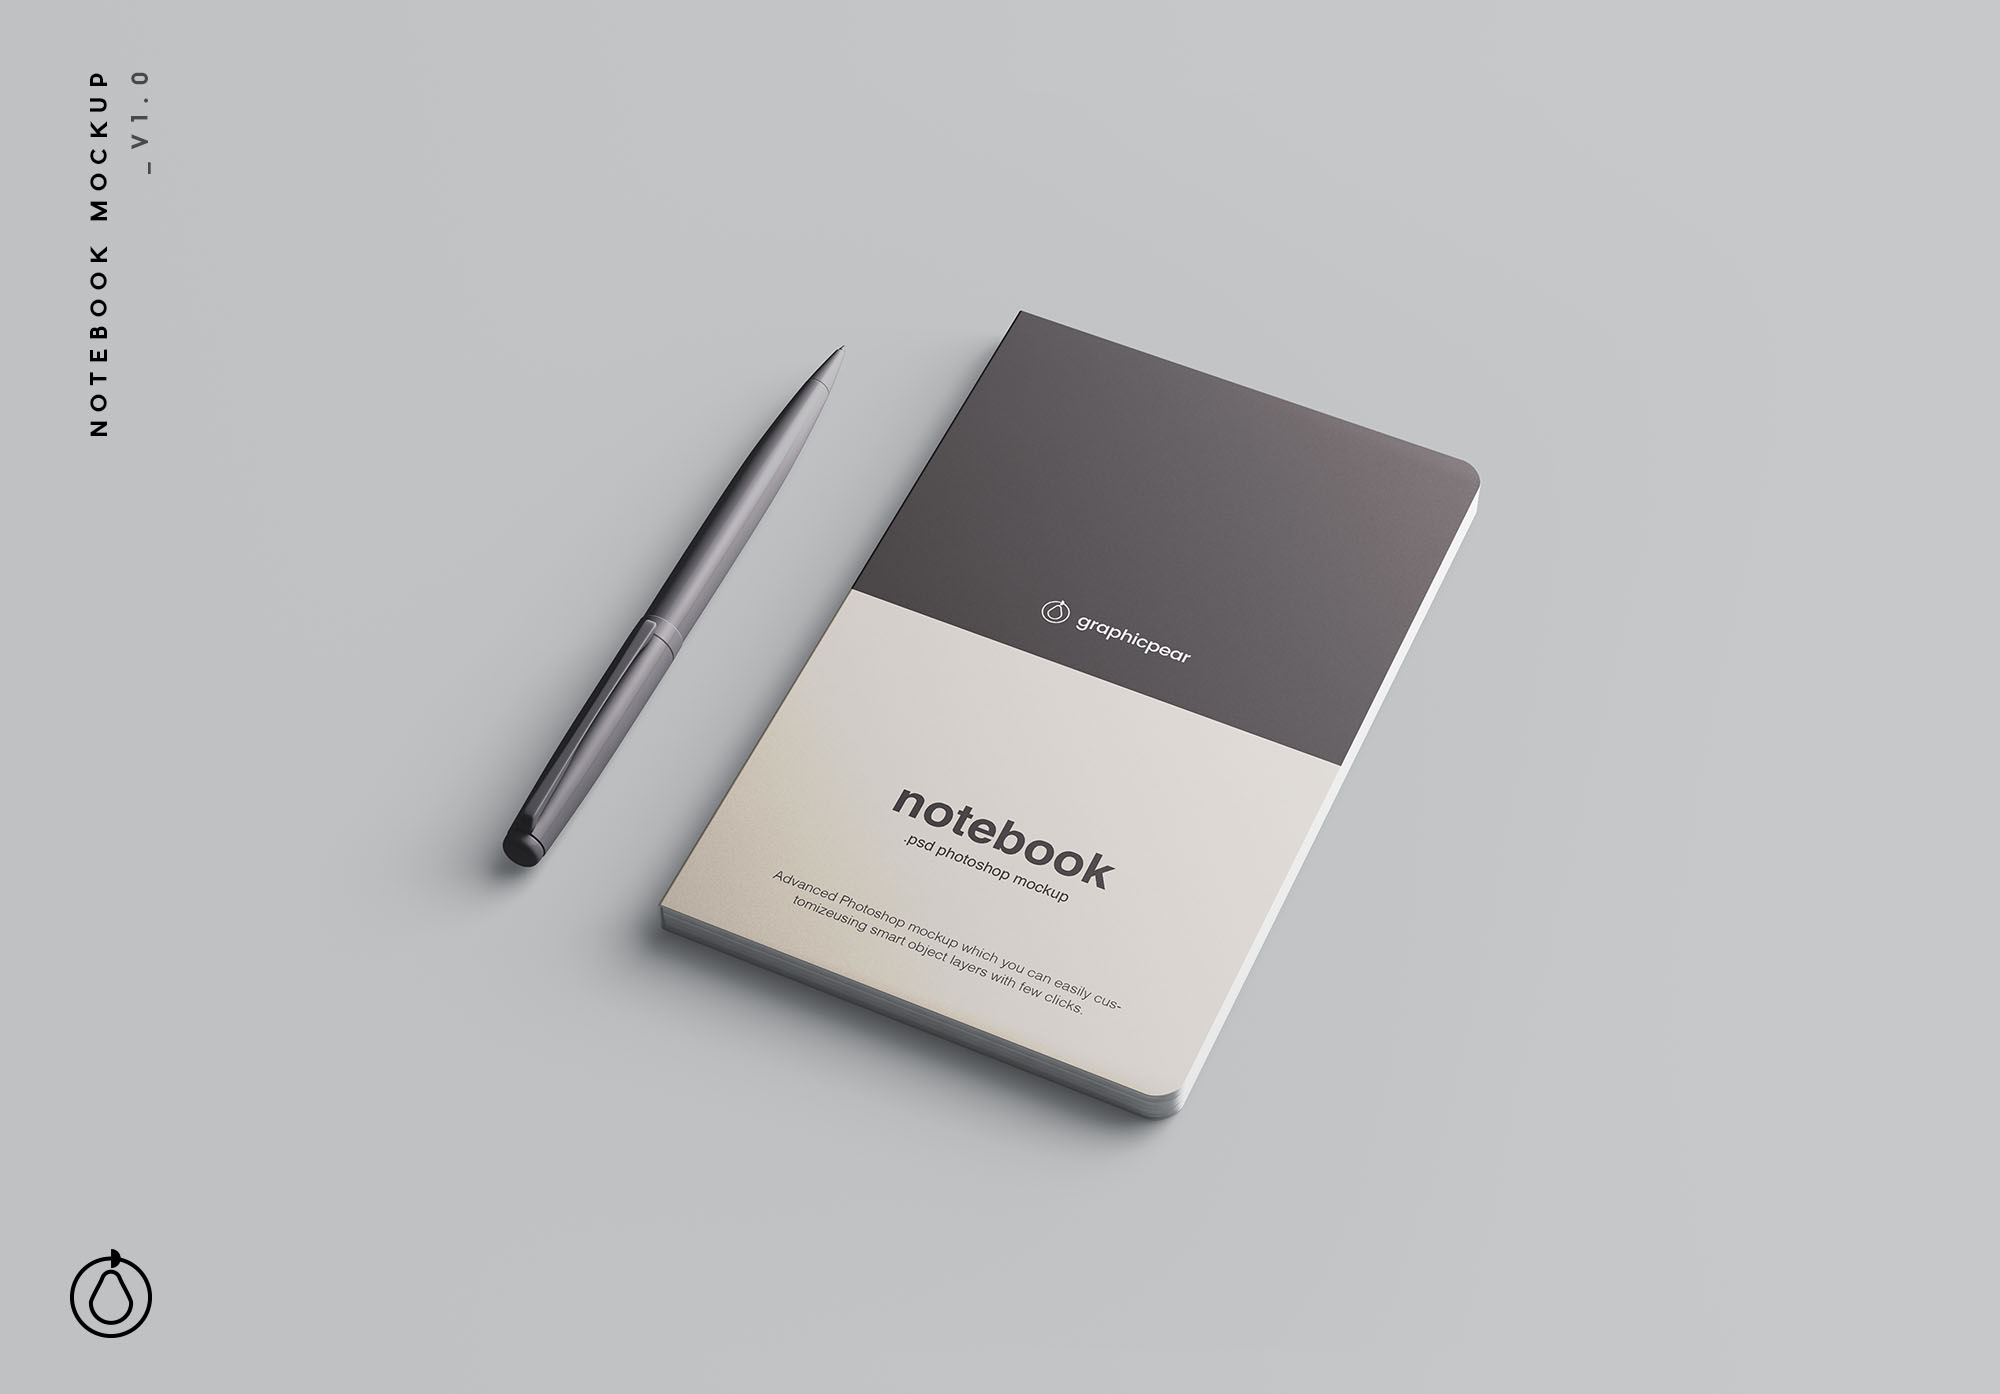 高级记事本封面设计效果图样机素材 Advanced Notebook Mockup插图